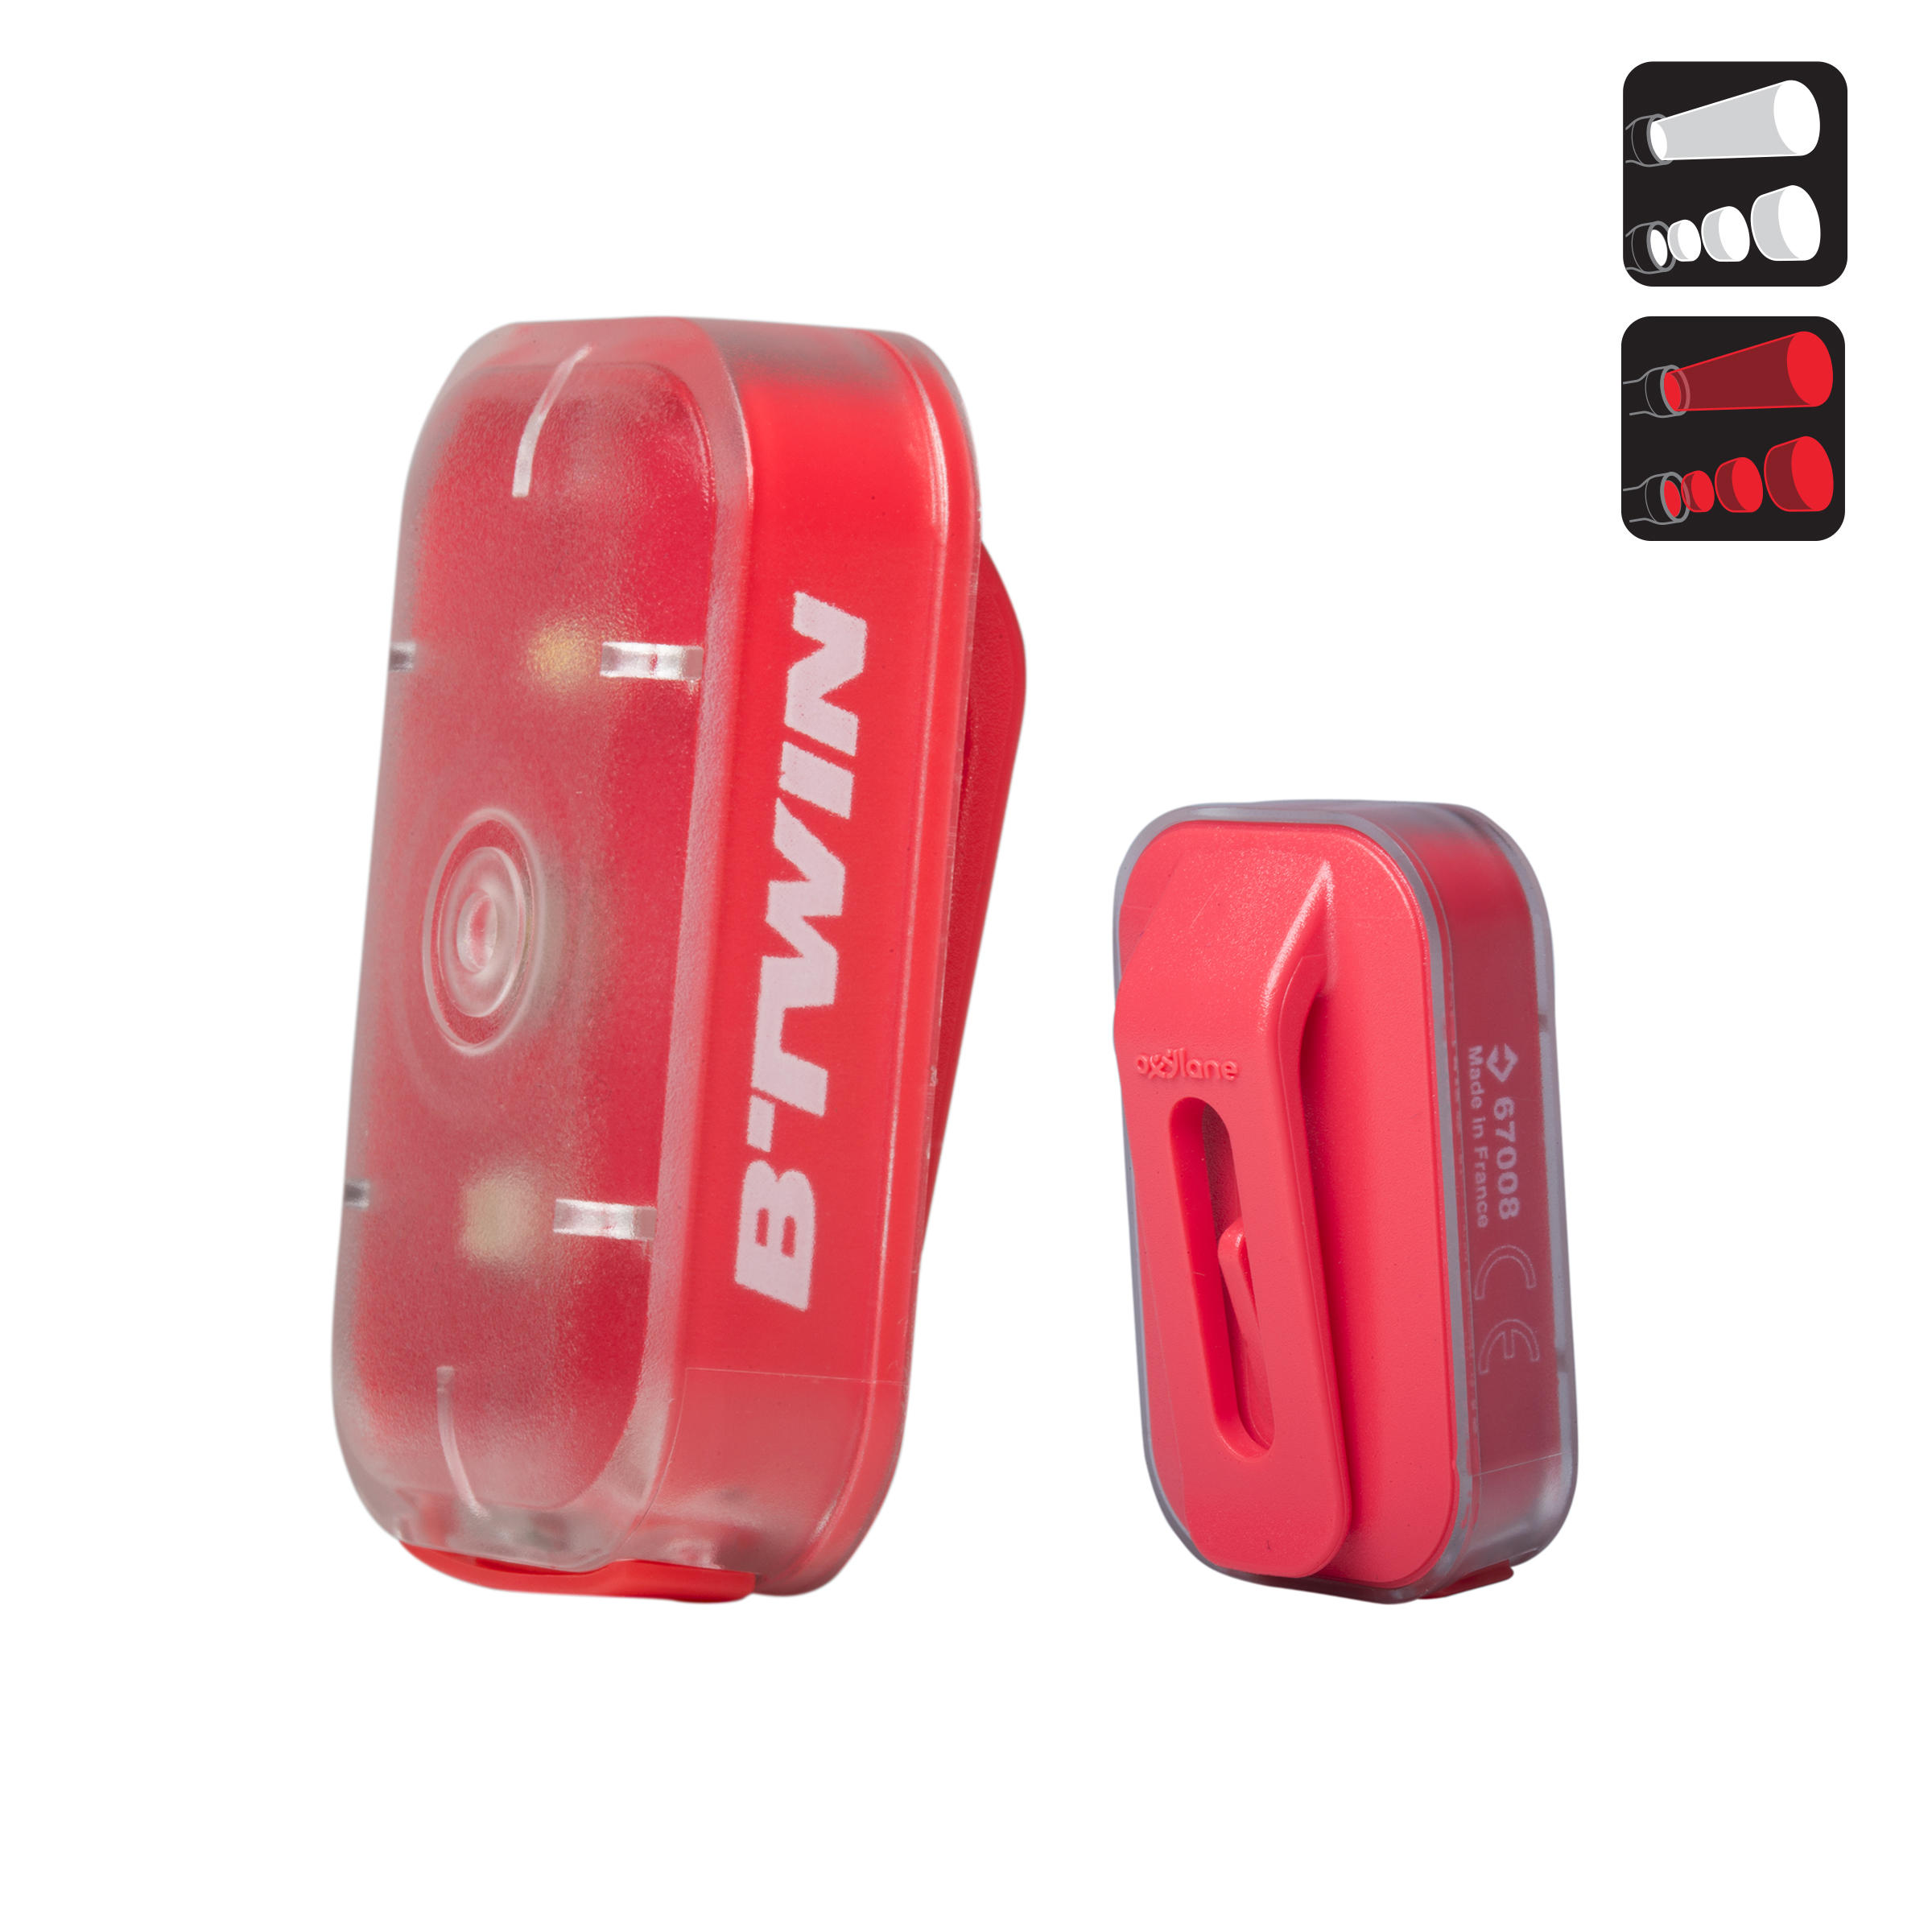 ELOPS CL 500 Front or Rear LED USB Bike Light - Pink